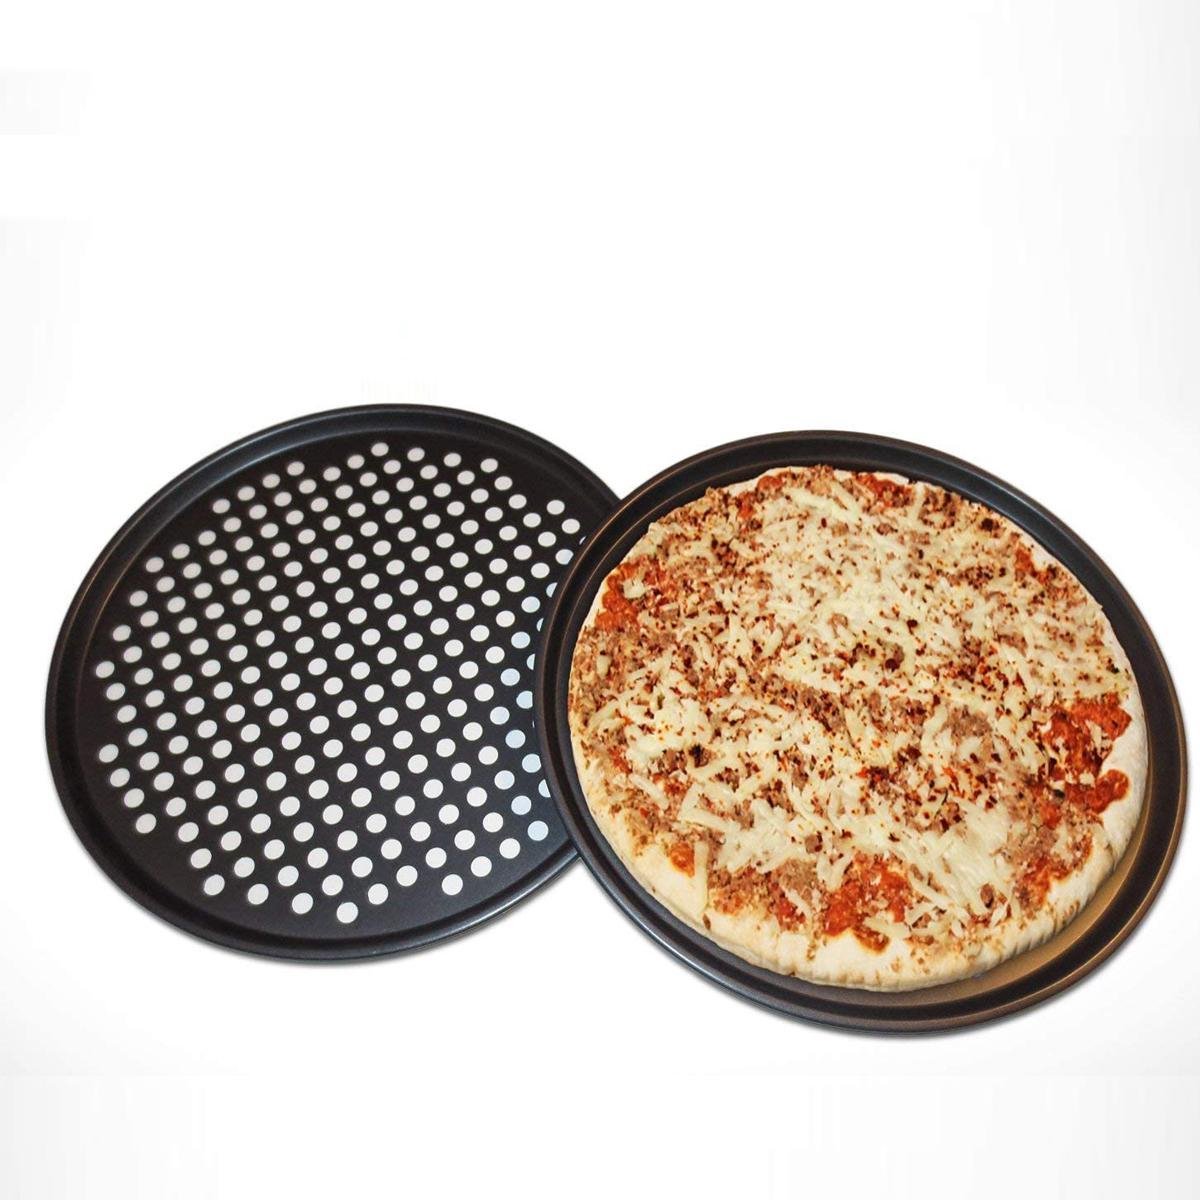 форма для приготовления пиццы в духовке фото 24